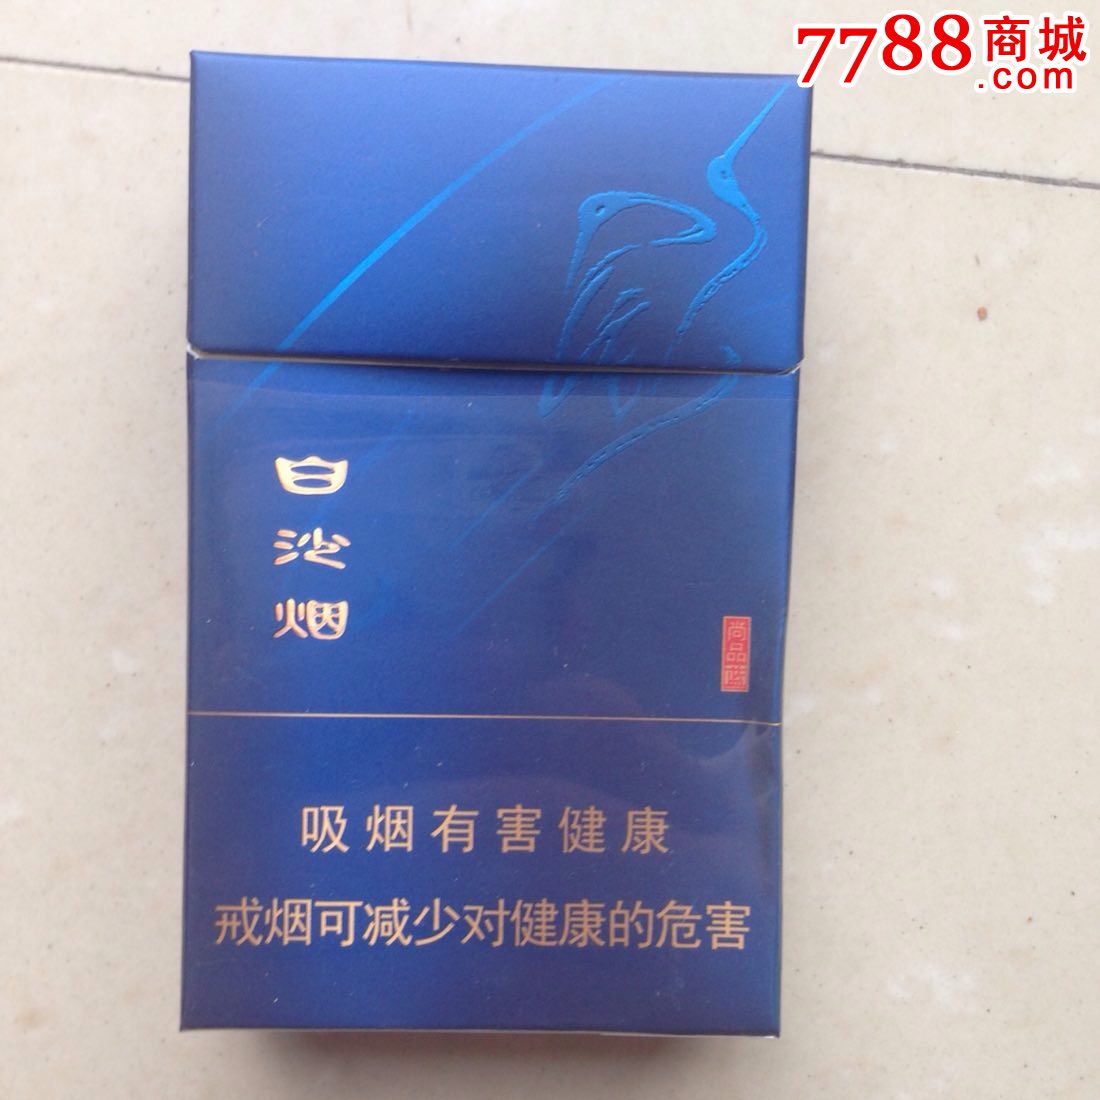 【白沙烟-尚品蓝】-se30277693-烟标/烟盒-零售-7788